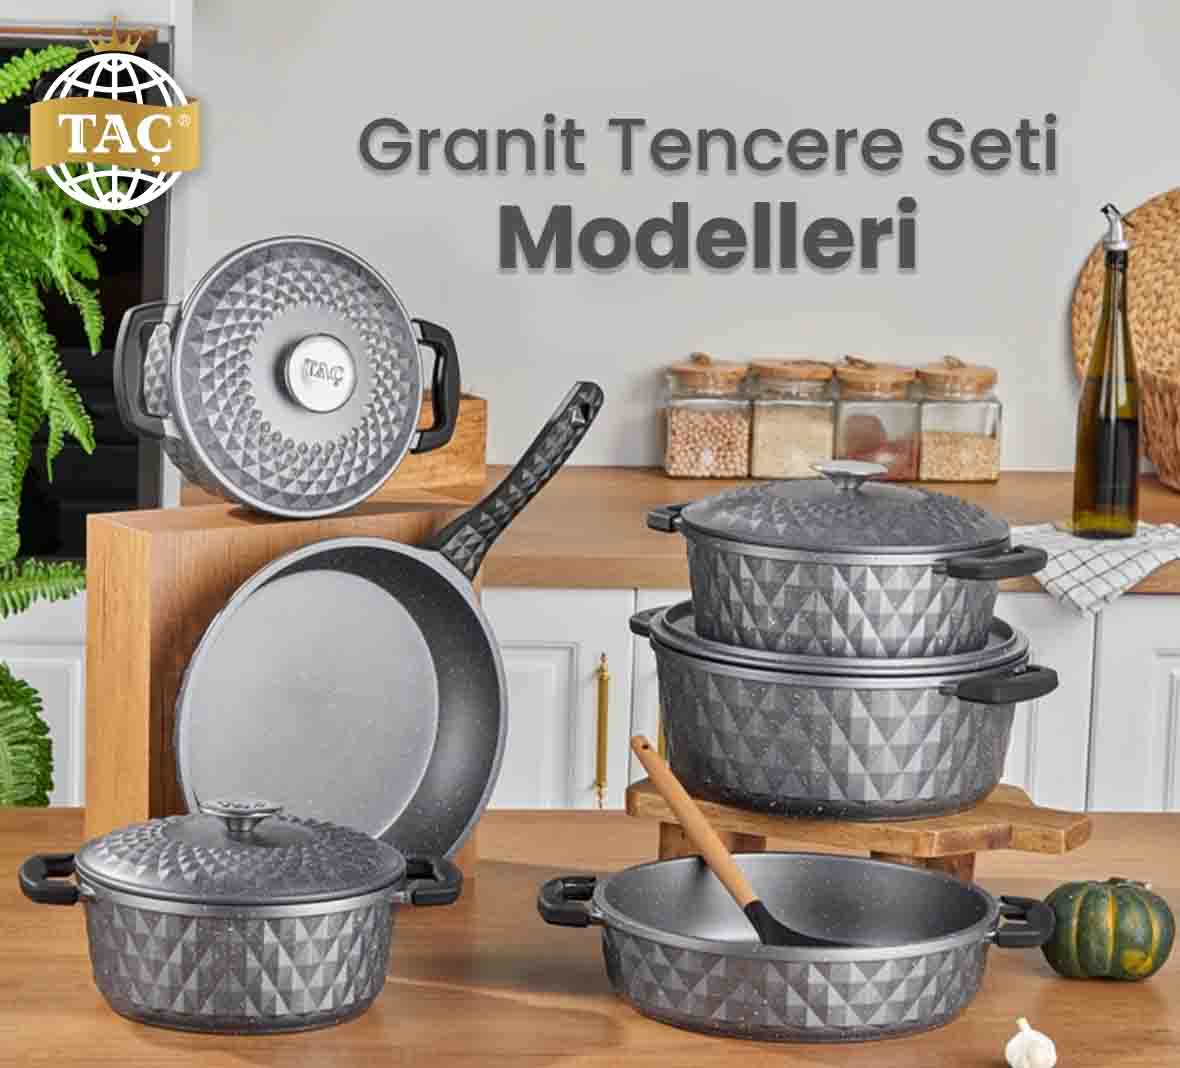 Granit Tencere Seti Modelleri hakkında detaylı bilgi için bize ulaşın. - tacev.com